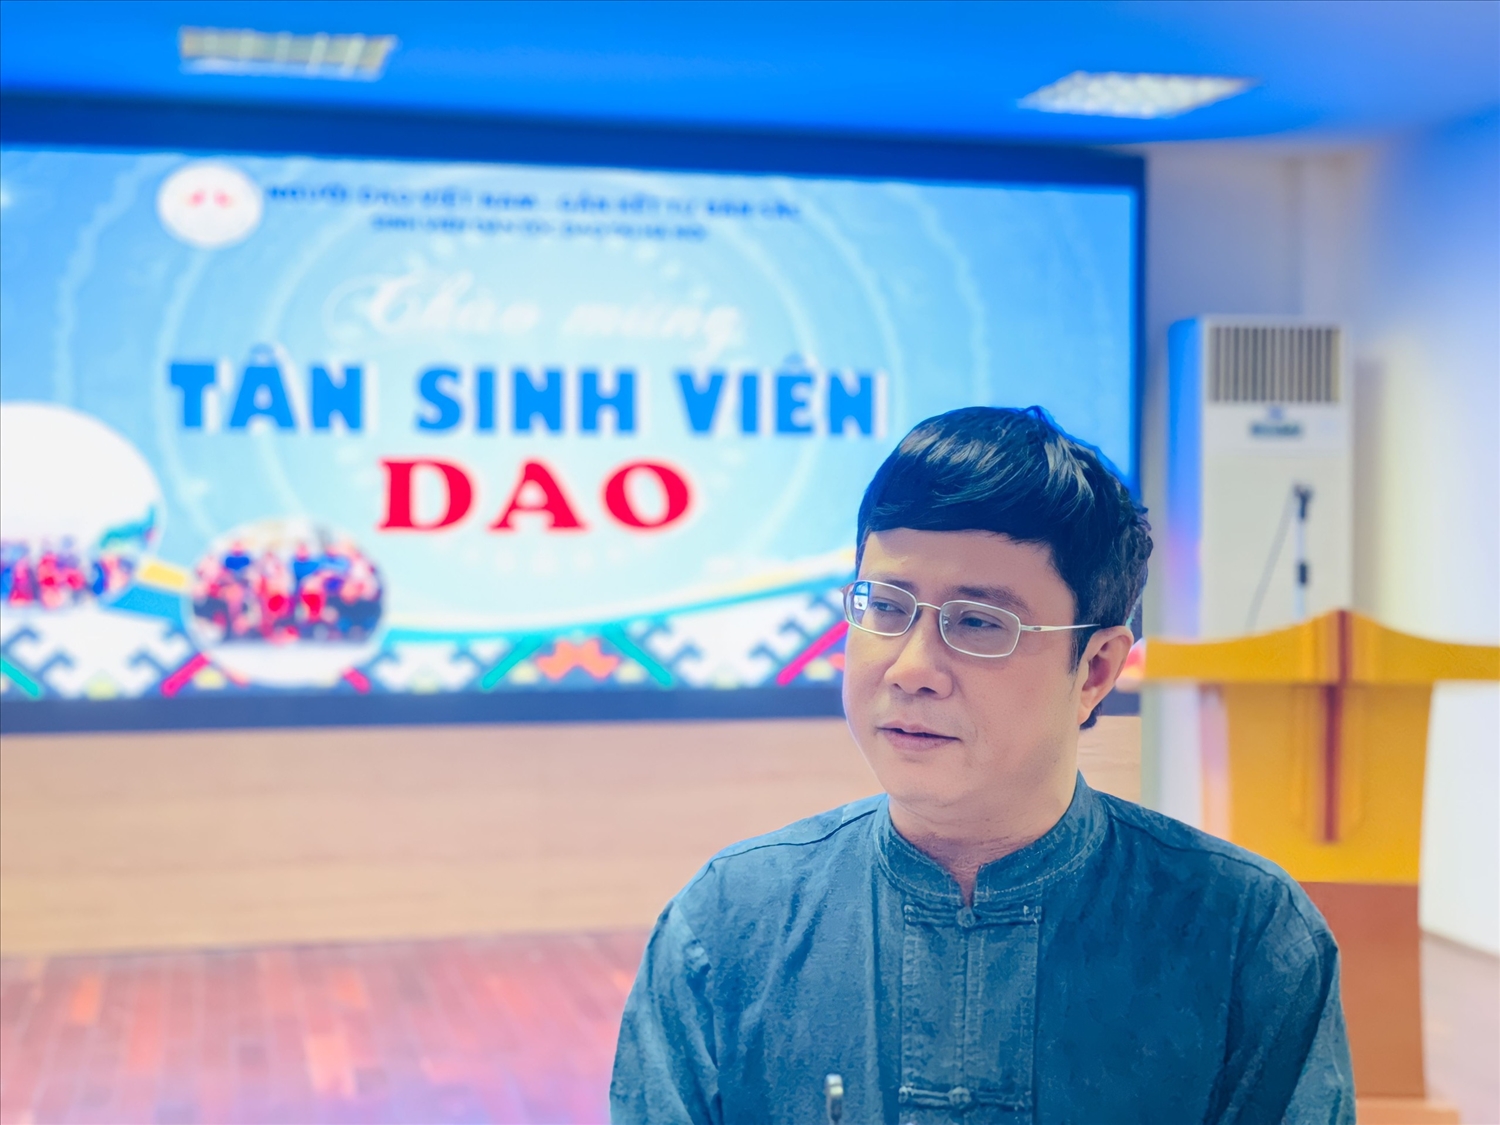 Tiến sĩ Bàn Tuấn Năng cho biết: “Sau 3 năm hoạt động, nhóm đã có rất nhiều thành công trong việc kết nối đặc biệt là hỗ trợ các bạn sinh viên người Dao xuống Hà Nội “tìm con chữ”. Ảnh: Lan Anh